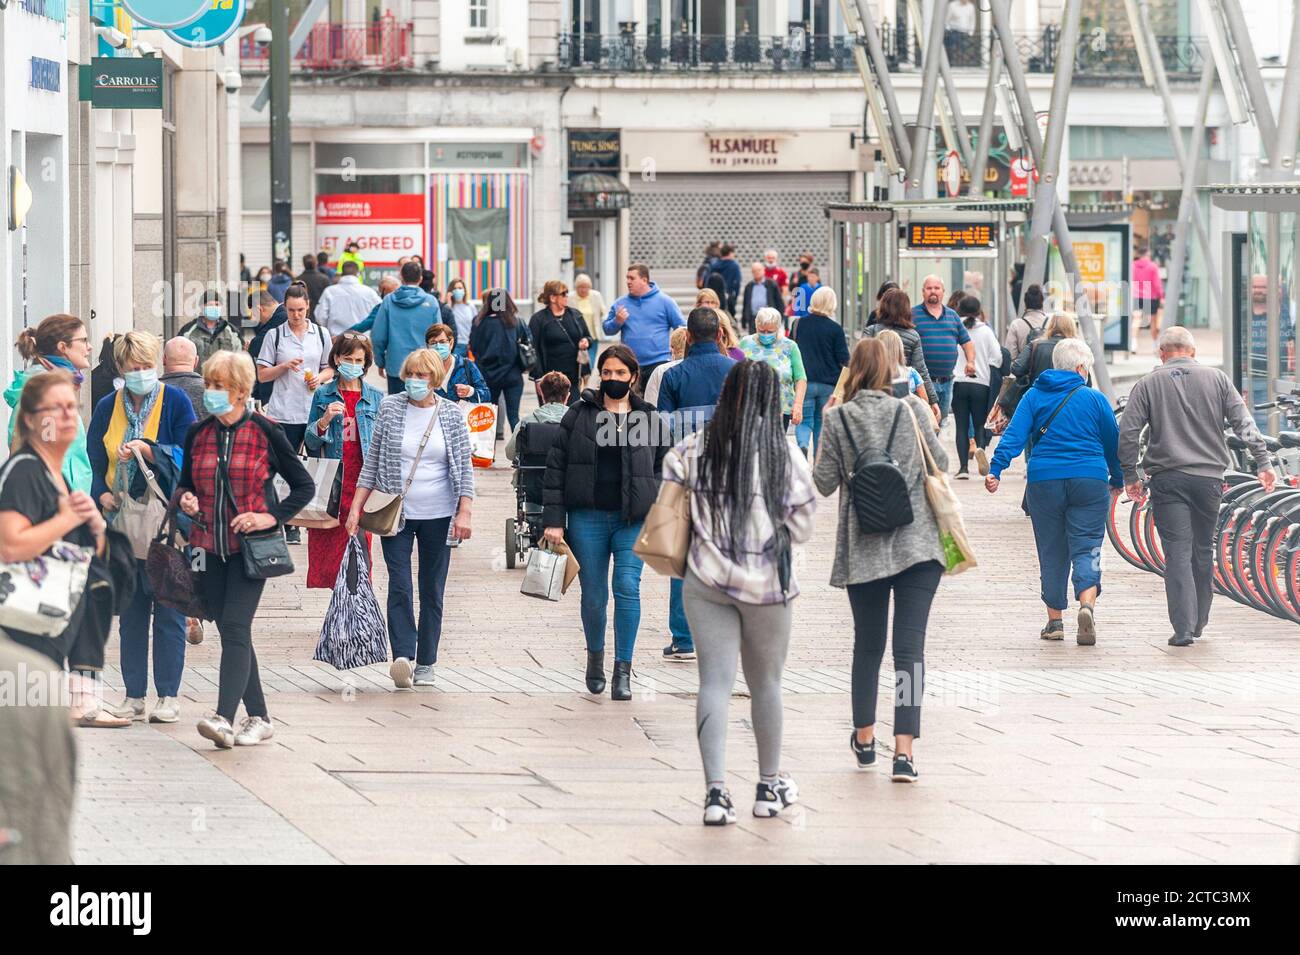 Cork, Irland. September 2020. Die Leute laufen entlang der Patrick Street in Cork City - einige mit Gesichtsmasken, aber die meisten ohne. COVID-19-Fälle nehmen landesweit zu, und es wird befürchtet, dass weitere Einschränkungen eingeführt werden. Quelle: AG News/Alamy Live News Stockfoto